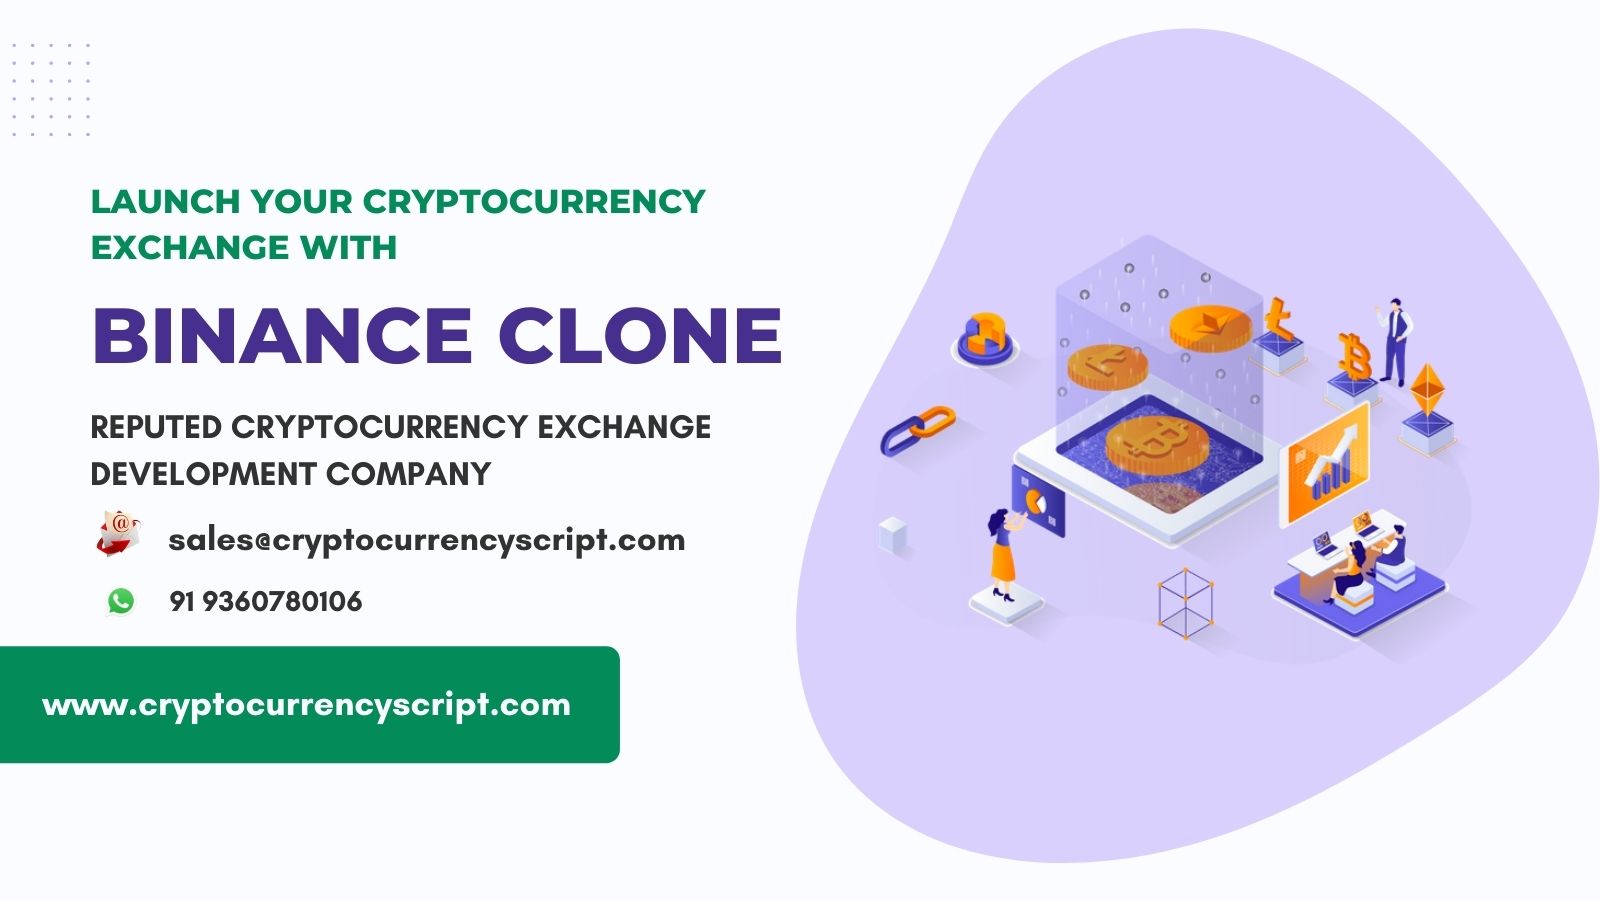 Launch your cryptocurrency exchange like Binance